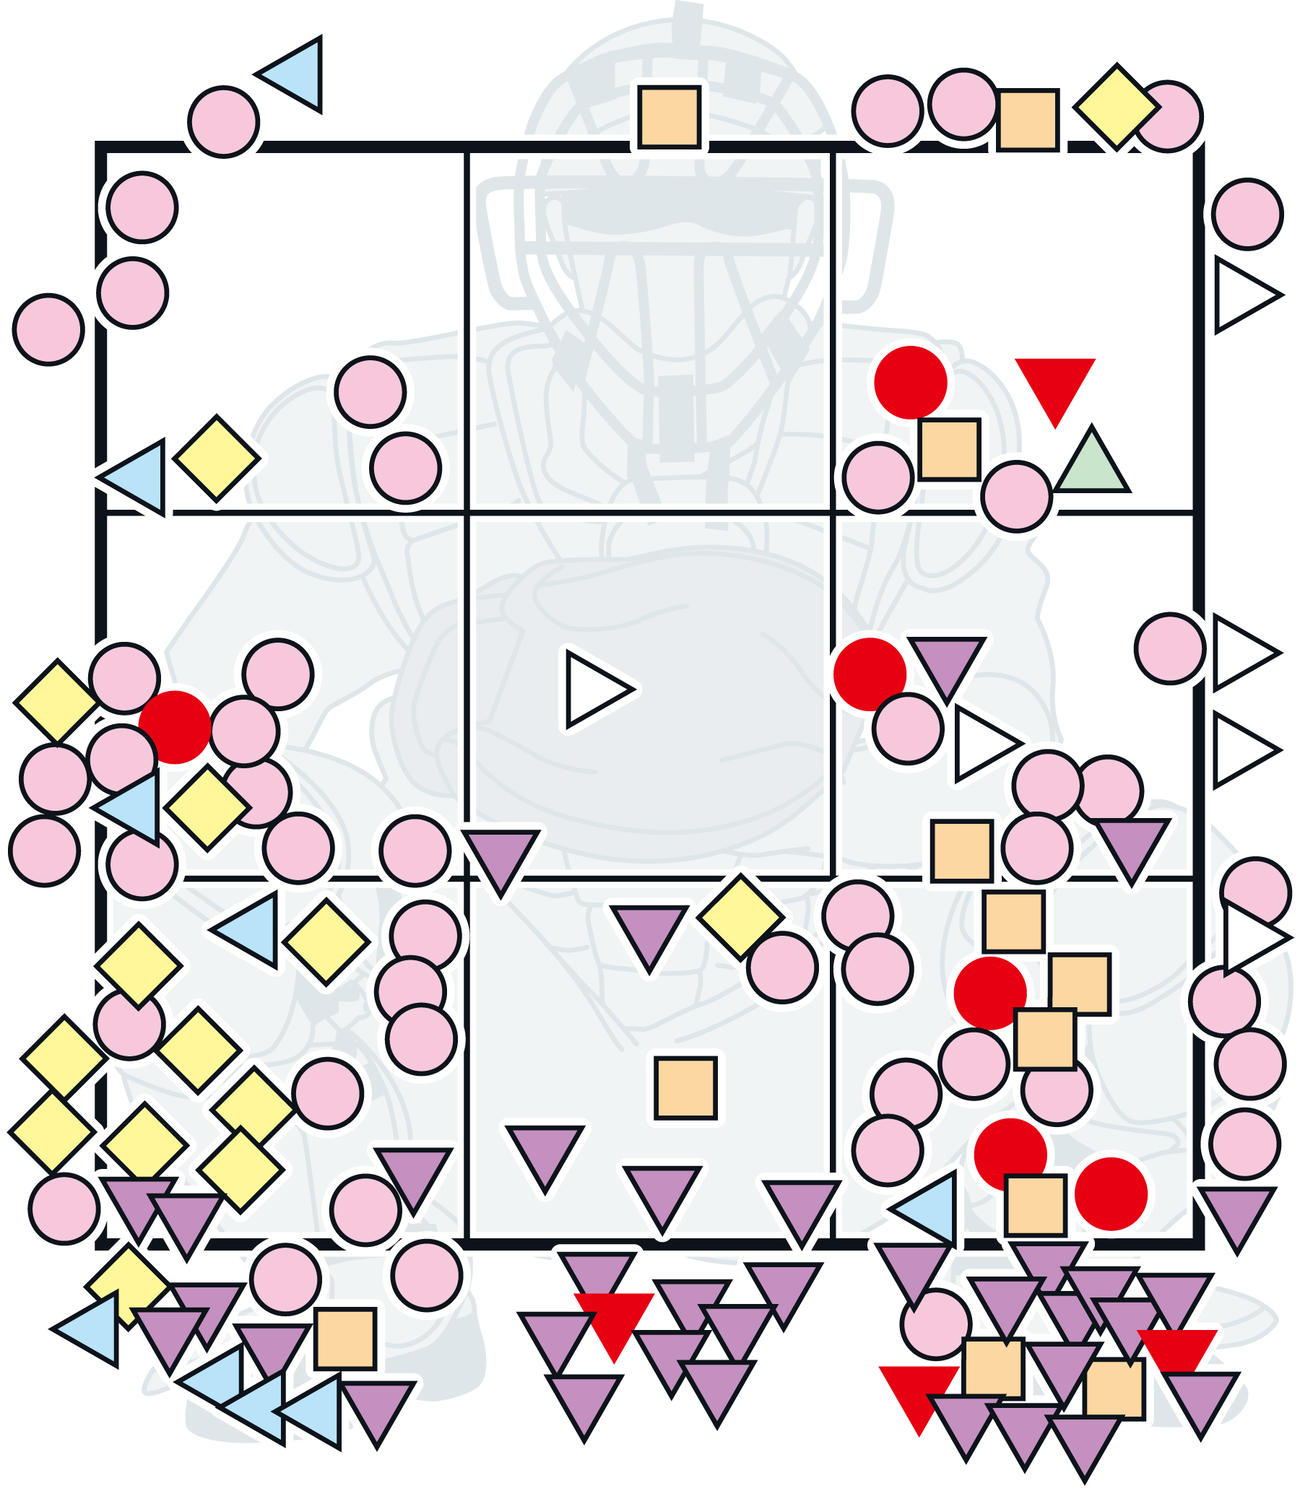 ヤクルト小川の15日DeNA戦での全球チャート図。ピンク色の丸は直球、水色の三角はスライダー、紫色の三角はフォーク、白色の三角はシュート、緑色の三角はナックルカーブ、オレンジ色の四角はチェンジアップ、黄色のひし形はカットボール。赤色は結果球。